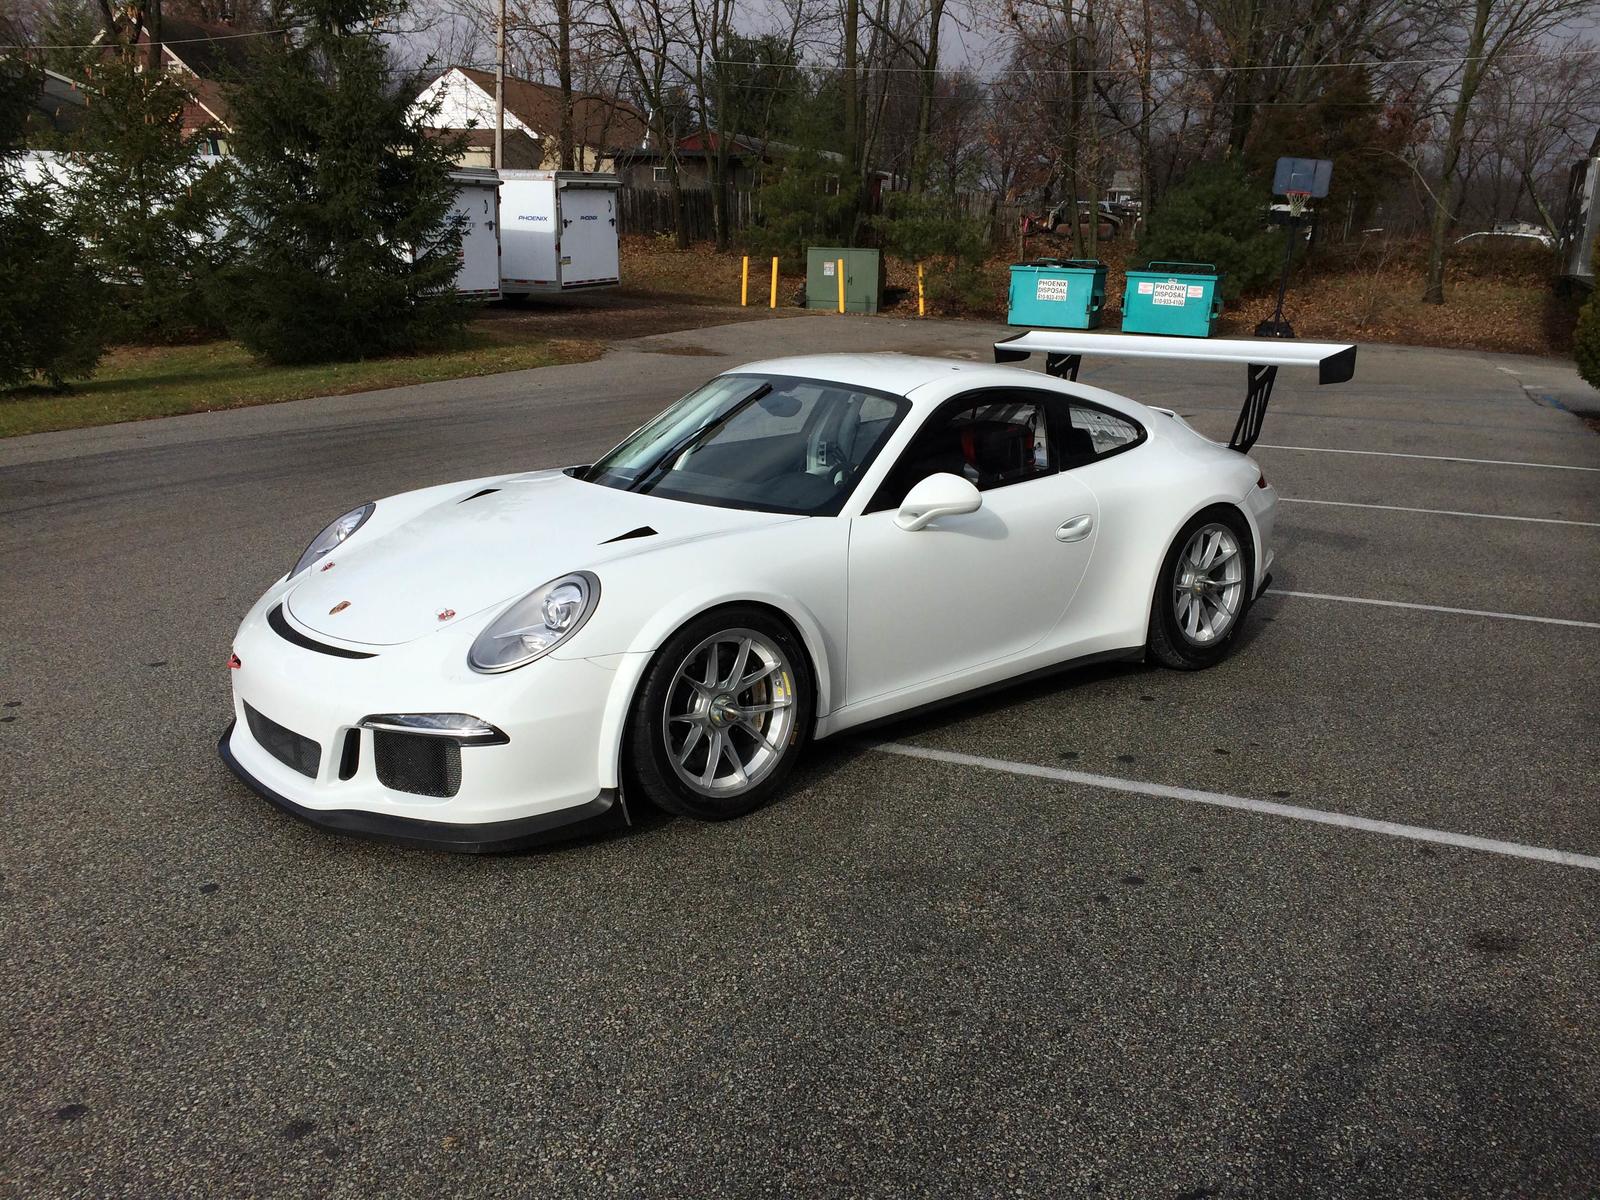 2015 Porsche 991 GT3 Cup car for sale - Rennlist - Porsche Discussion Forums